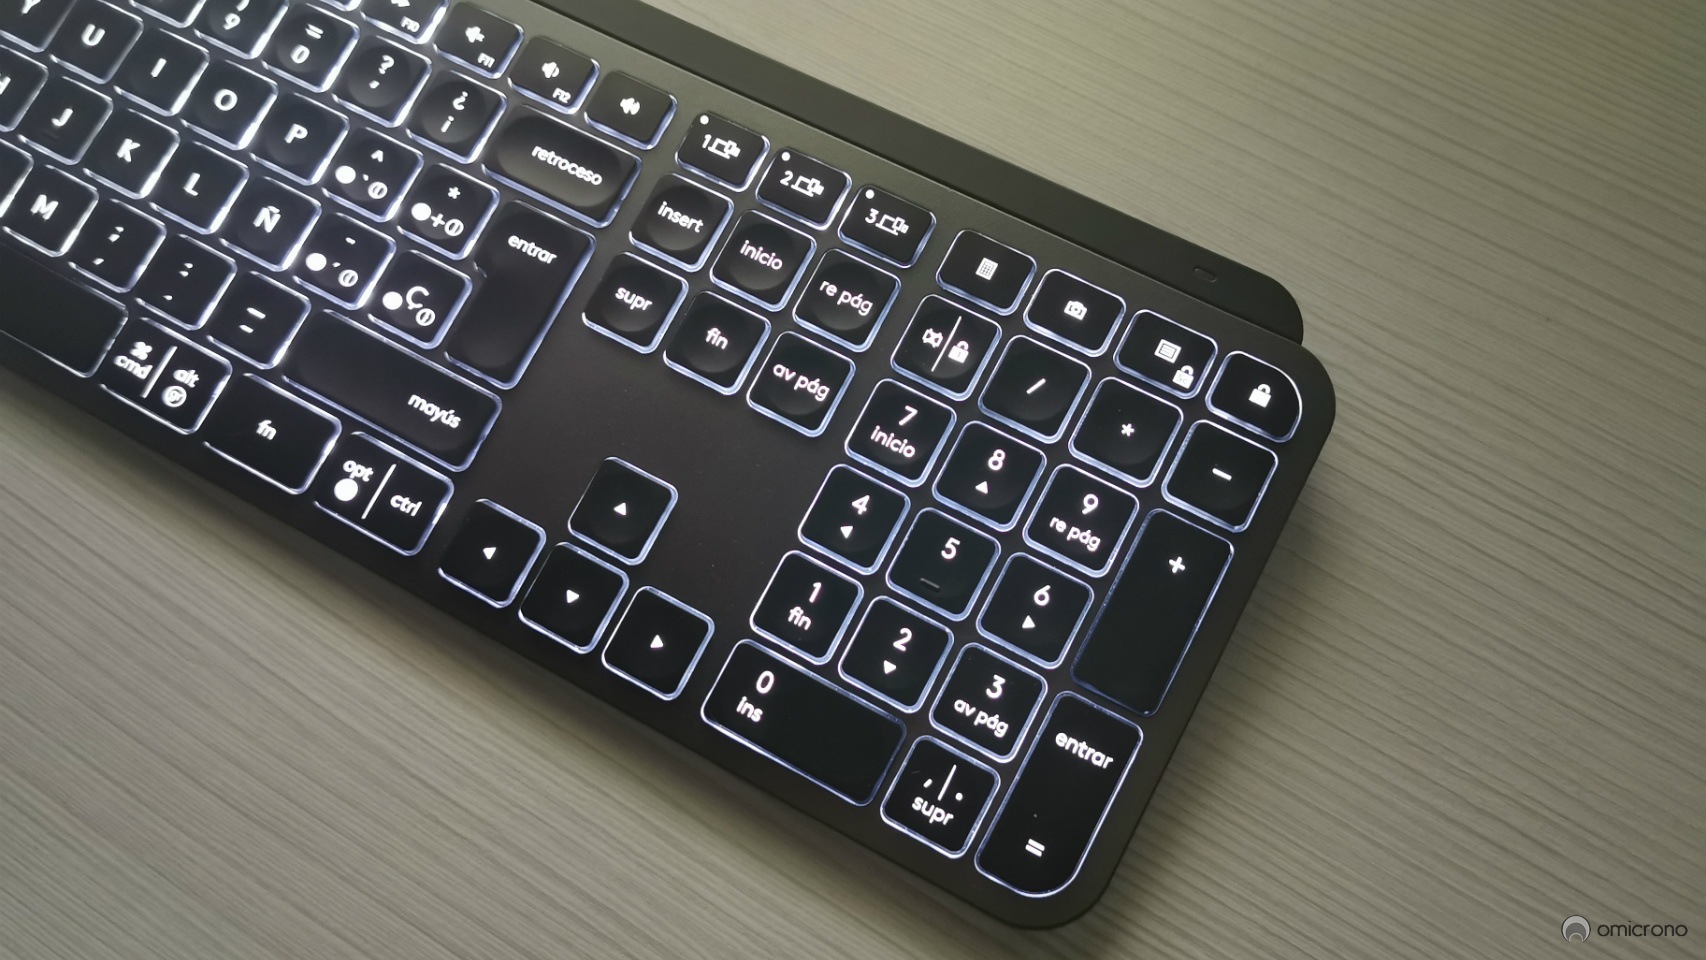 Fructífero embudo estar impresionado Logitech MX Keys, análisis: el teclado que se ilumina al acercar las manos